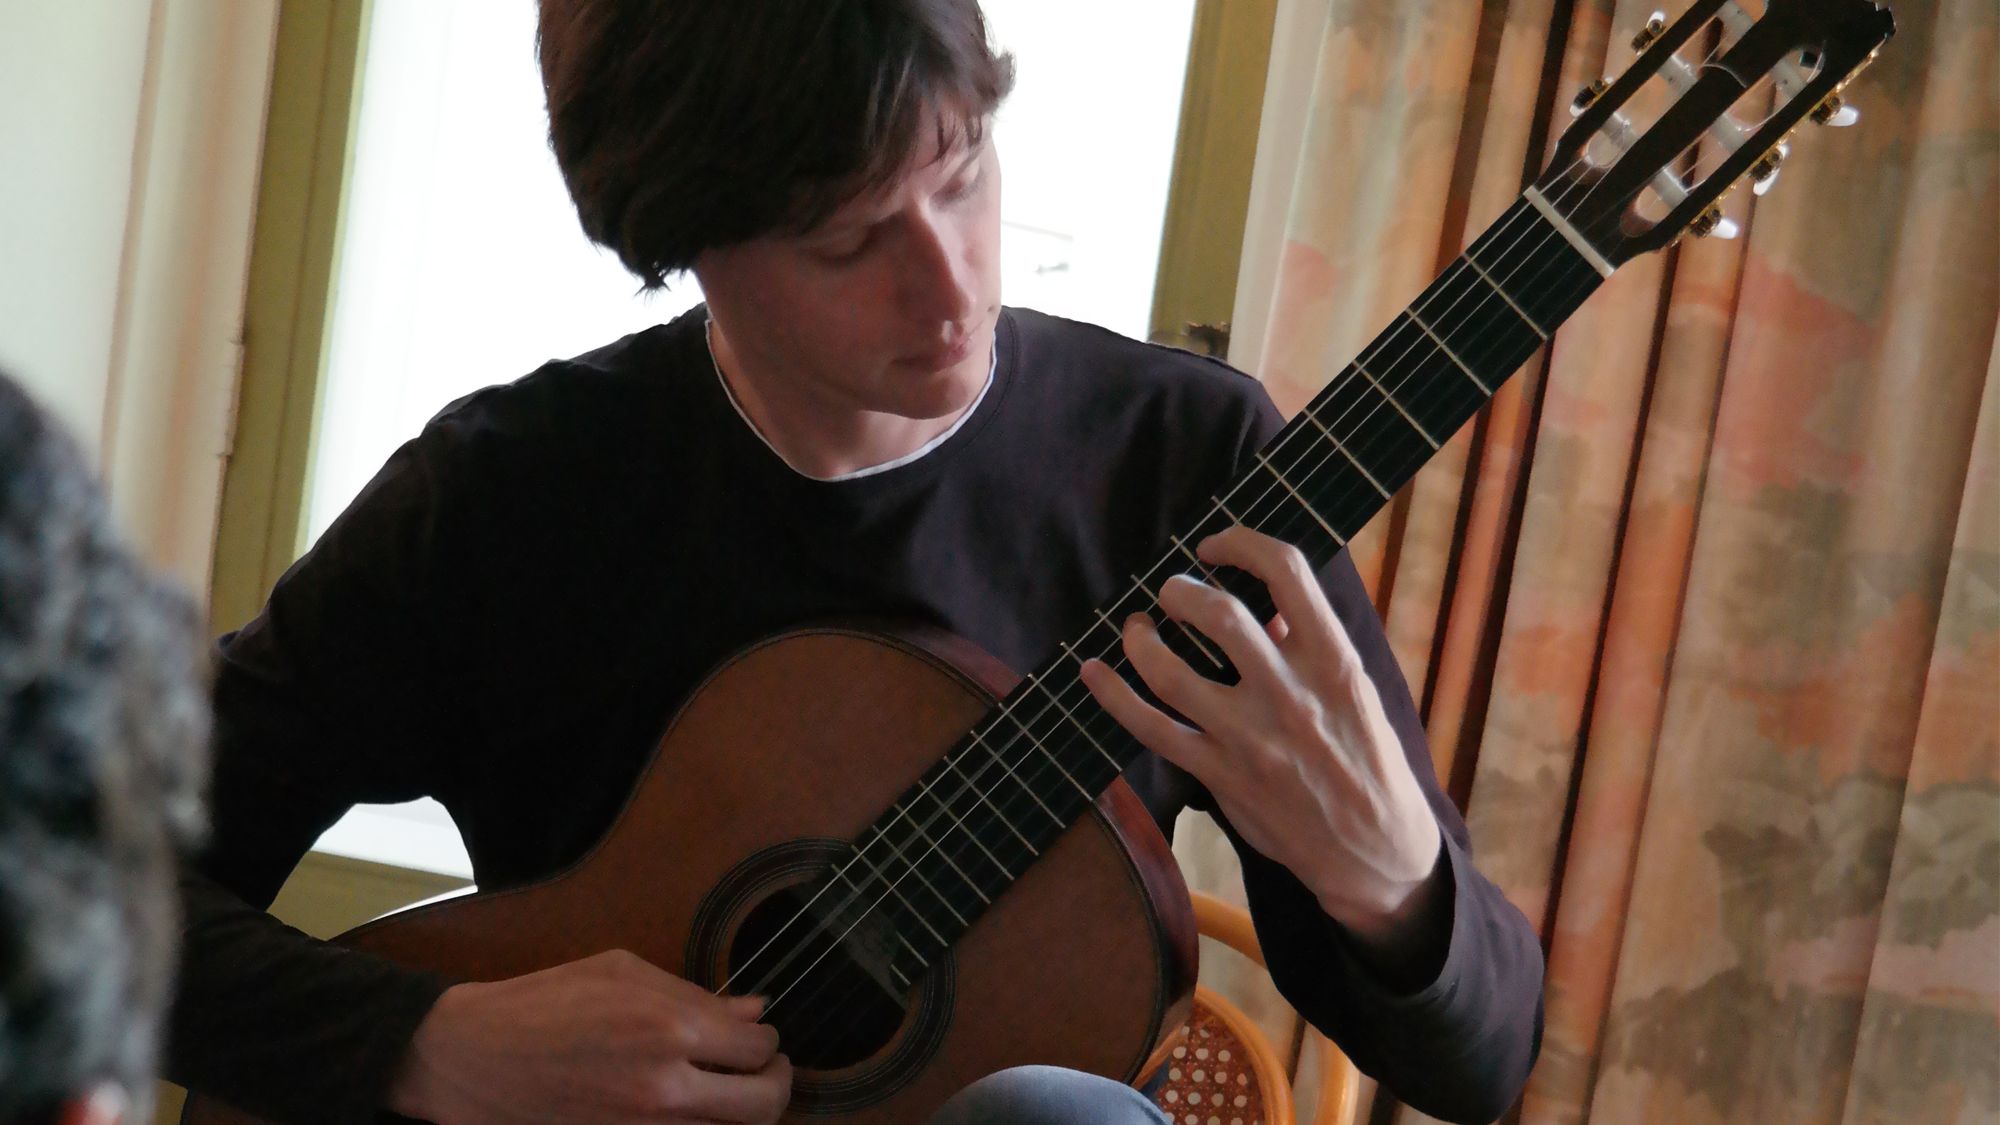 huiskamerconcert met klassiek gitarist robert beemsterboer